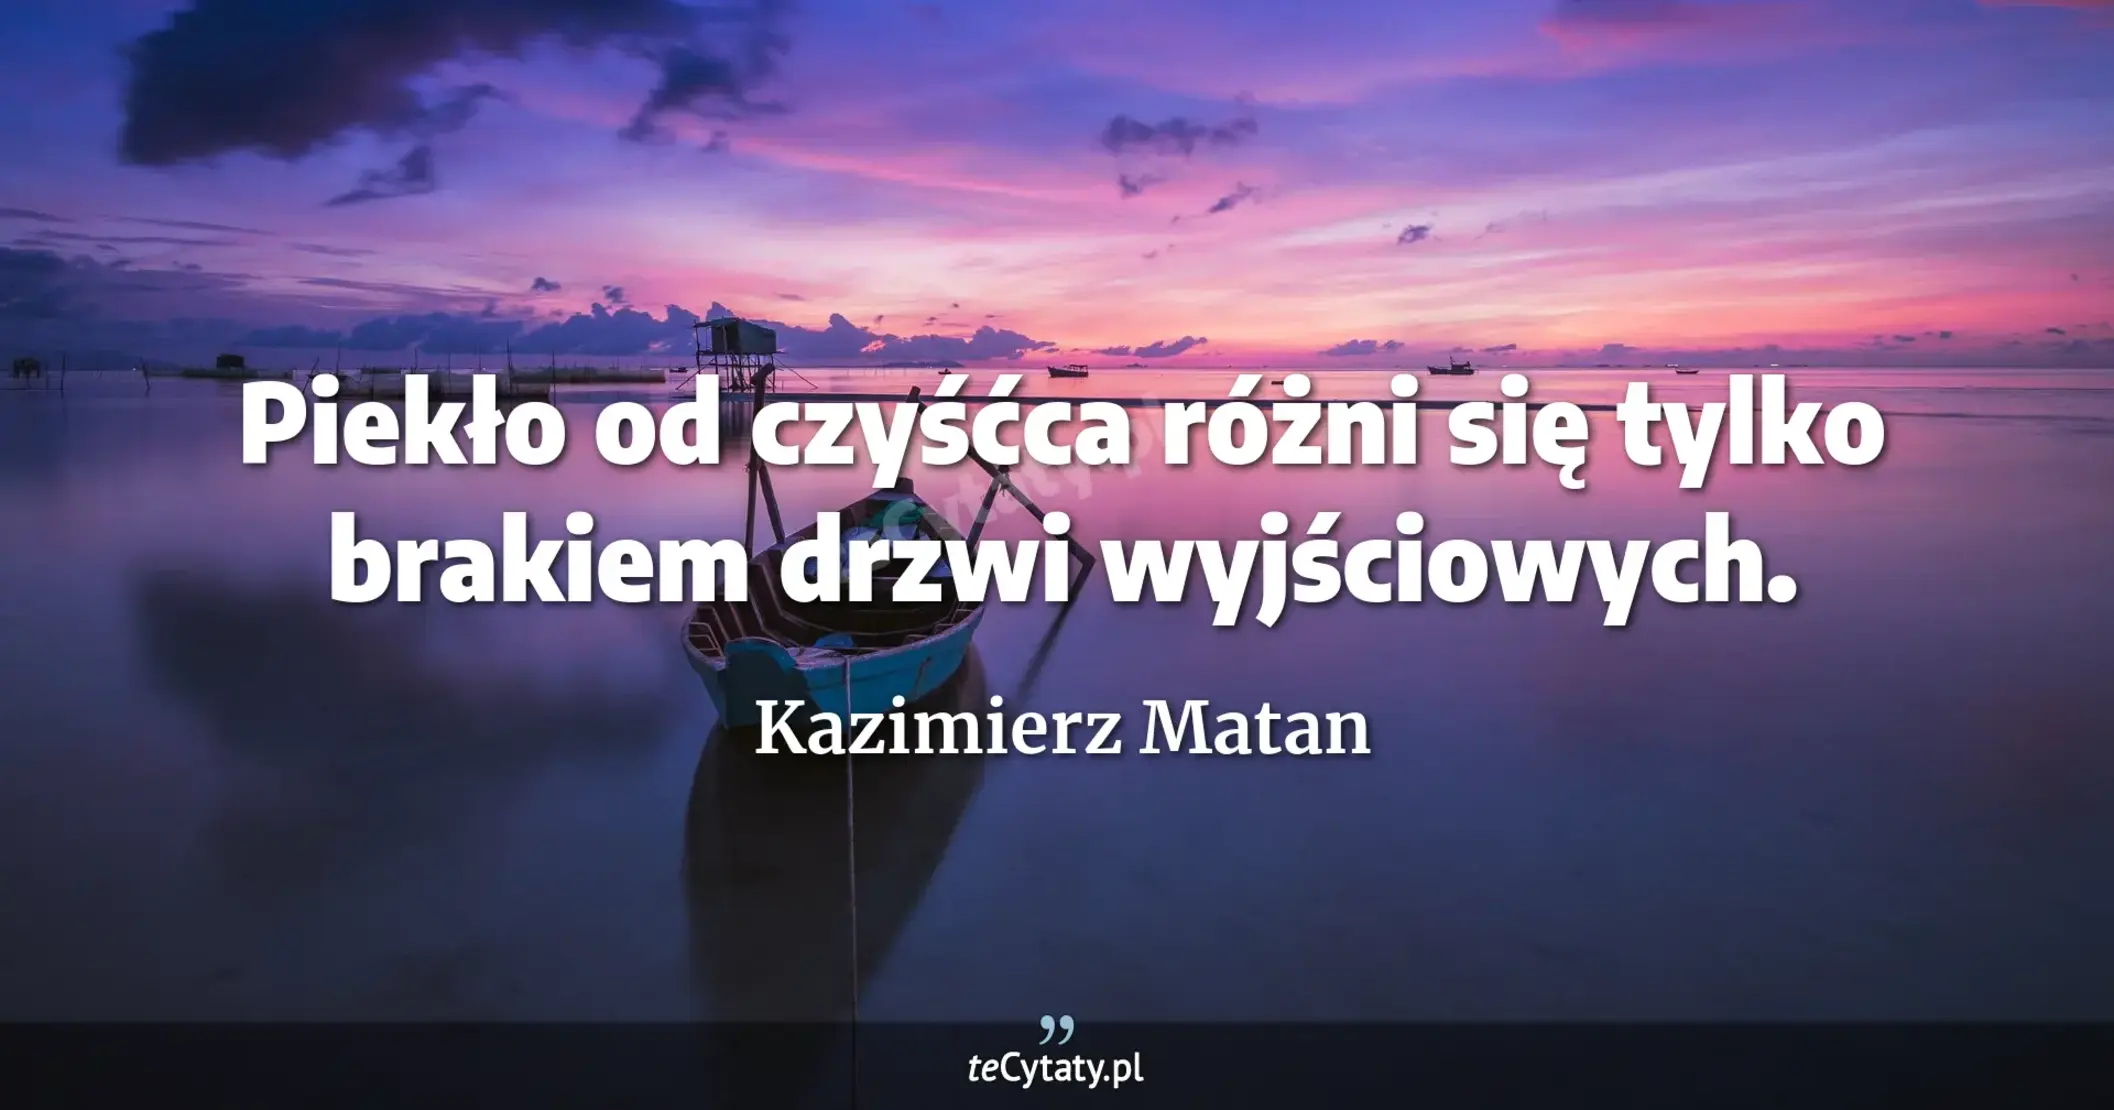 Piekło od czyśćca różni się tylko brakiem drzwi wyjściowych. - Kazimierz Matan